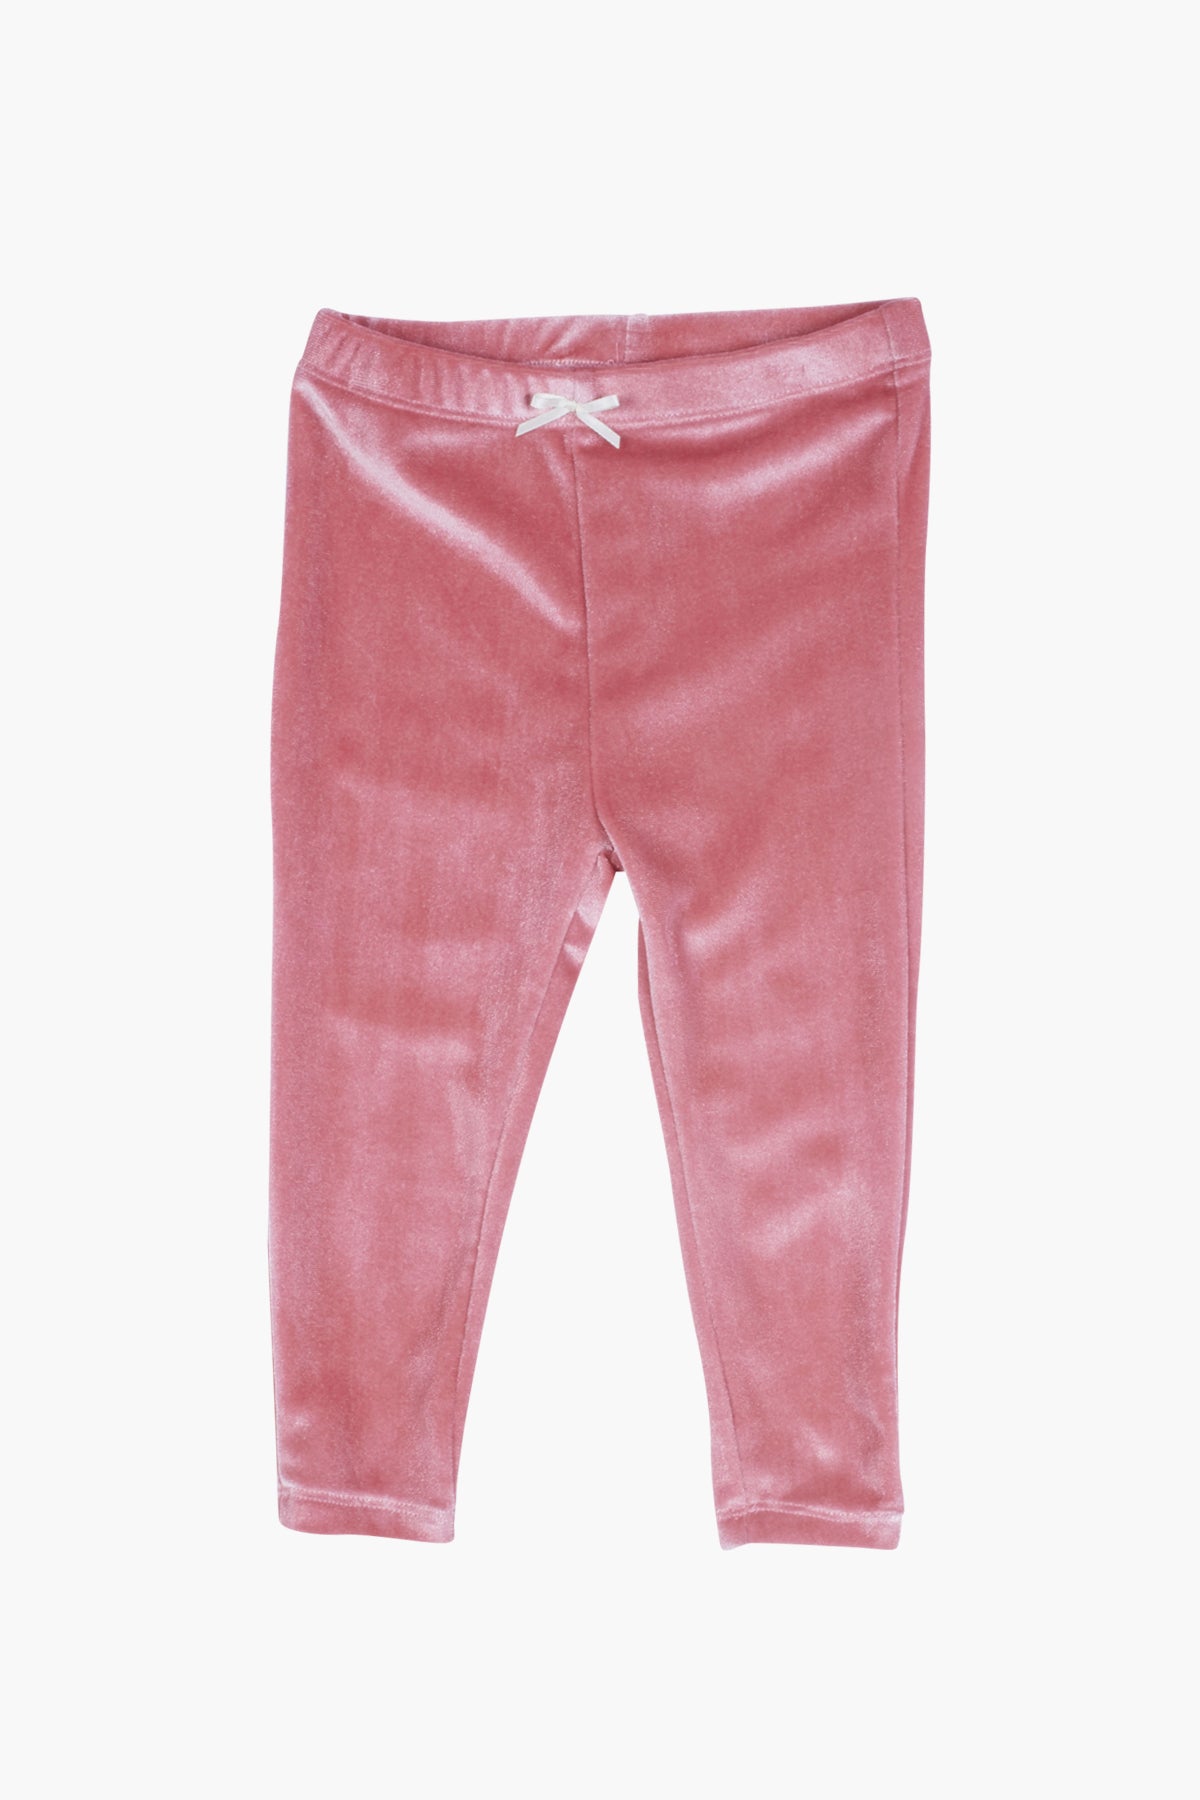 Pink Chicken Rose Velour Girls Legging (Size 6/12M left) – Mini Ruby